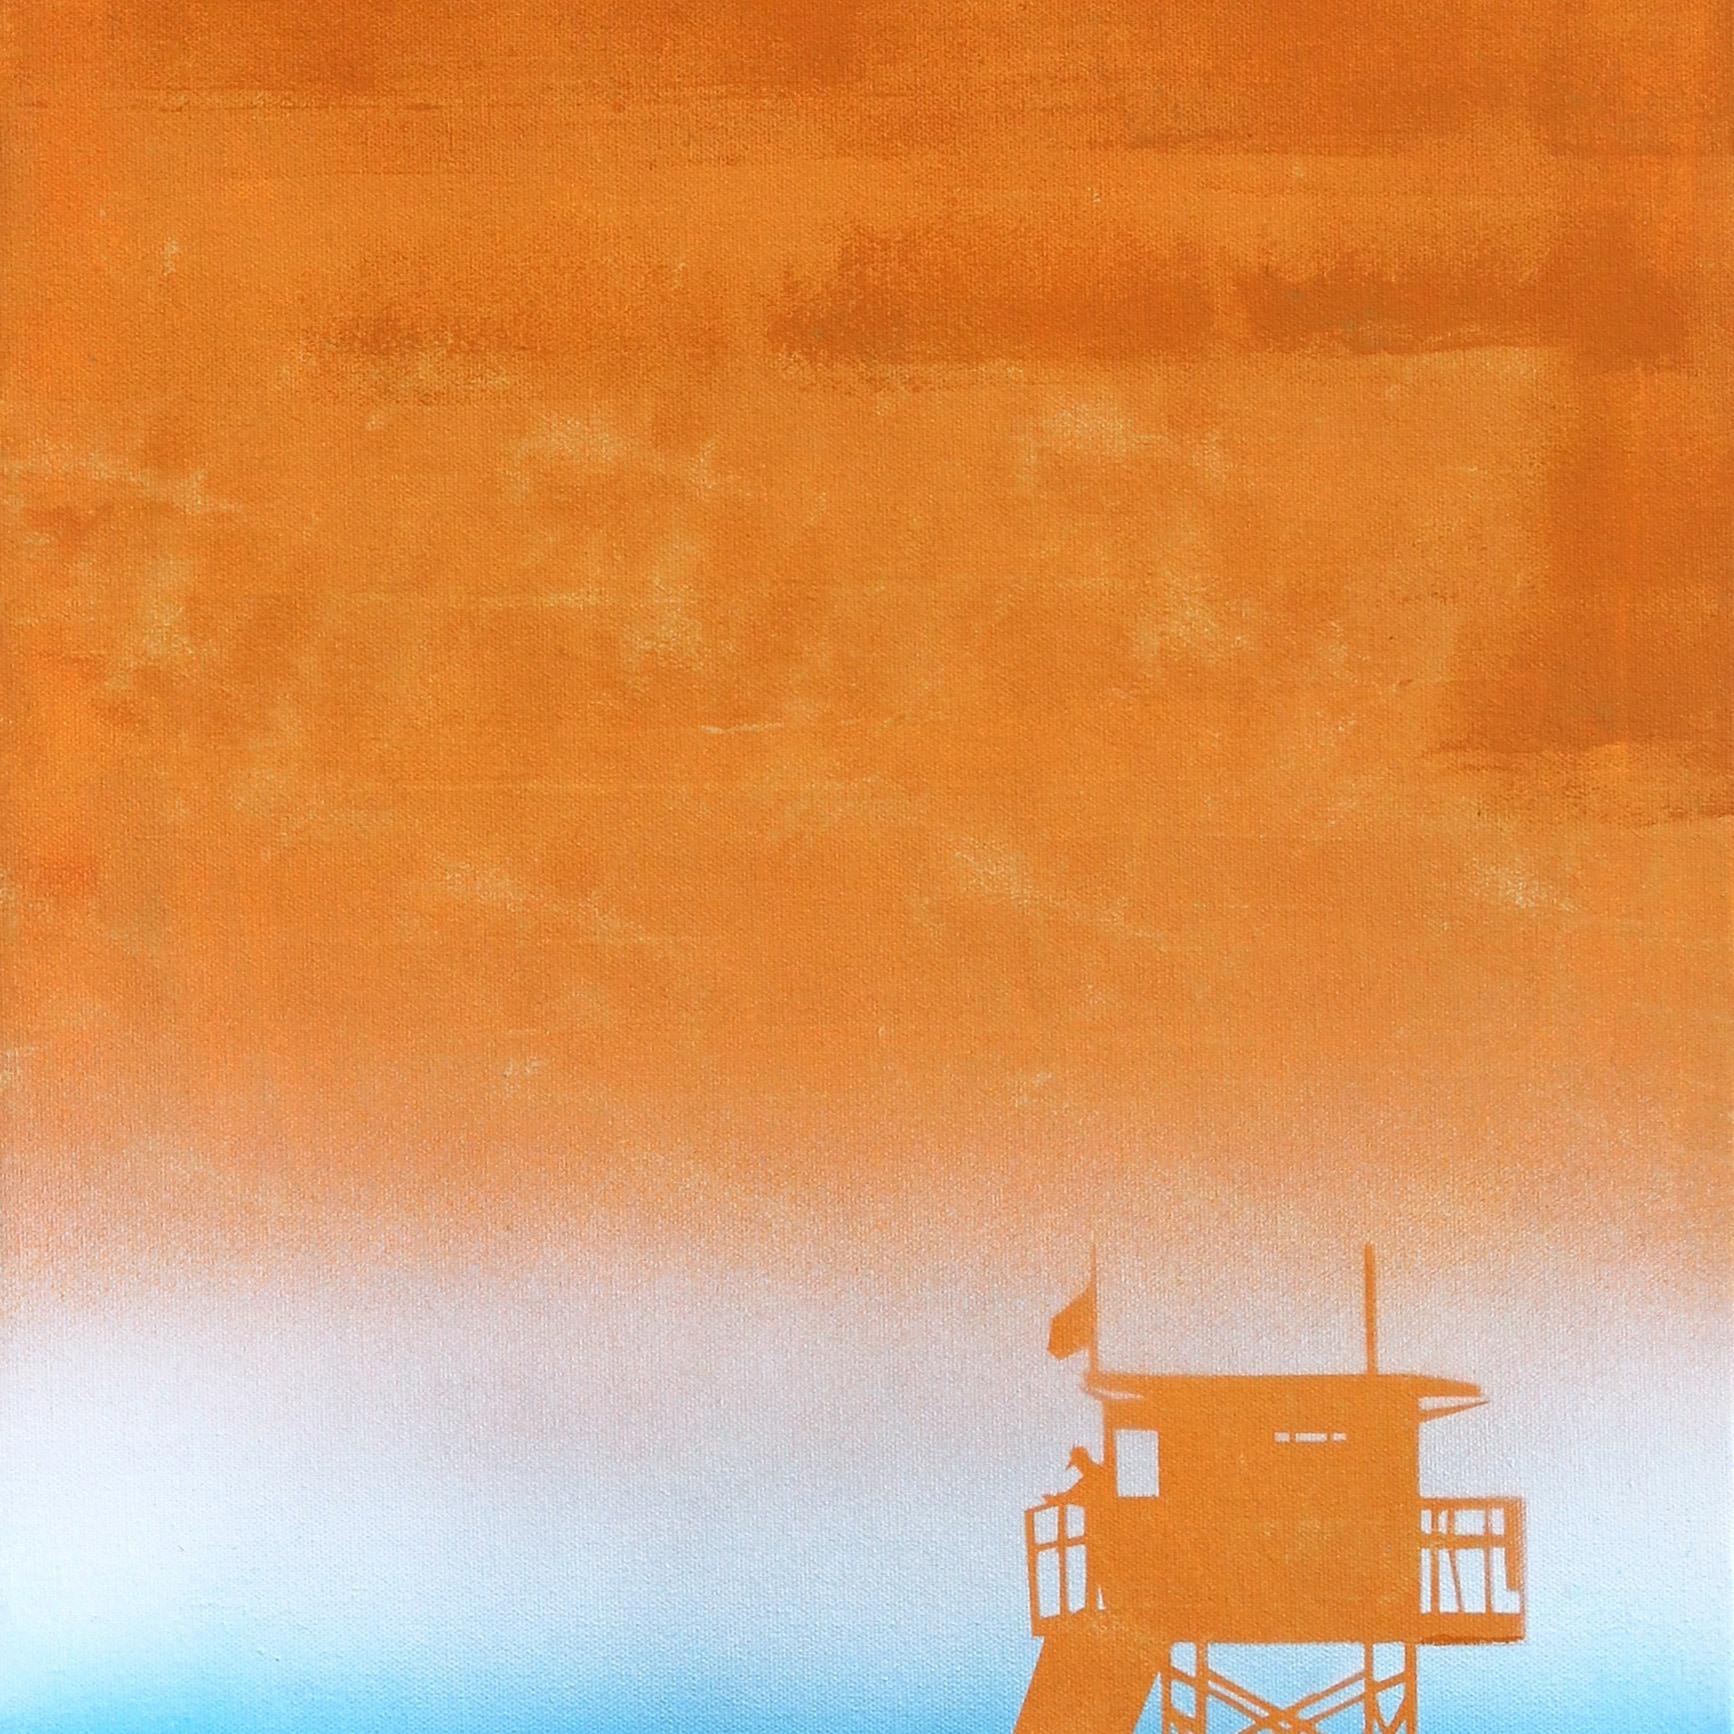 Tangerine Heat - Orange Abstract Painting by Kathleen Keifer